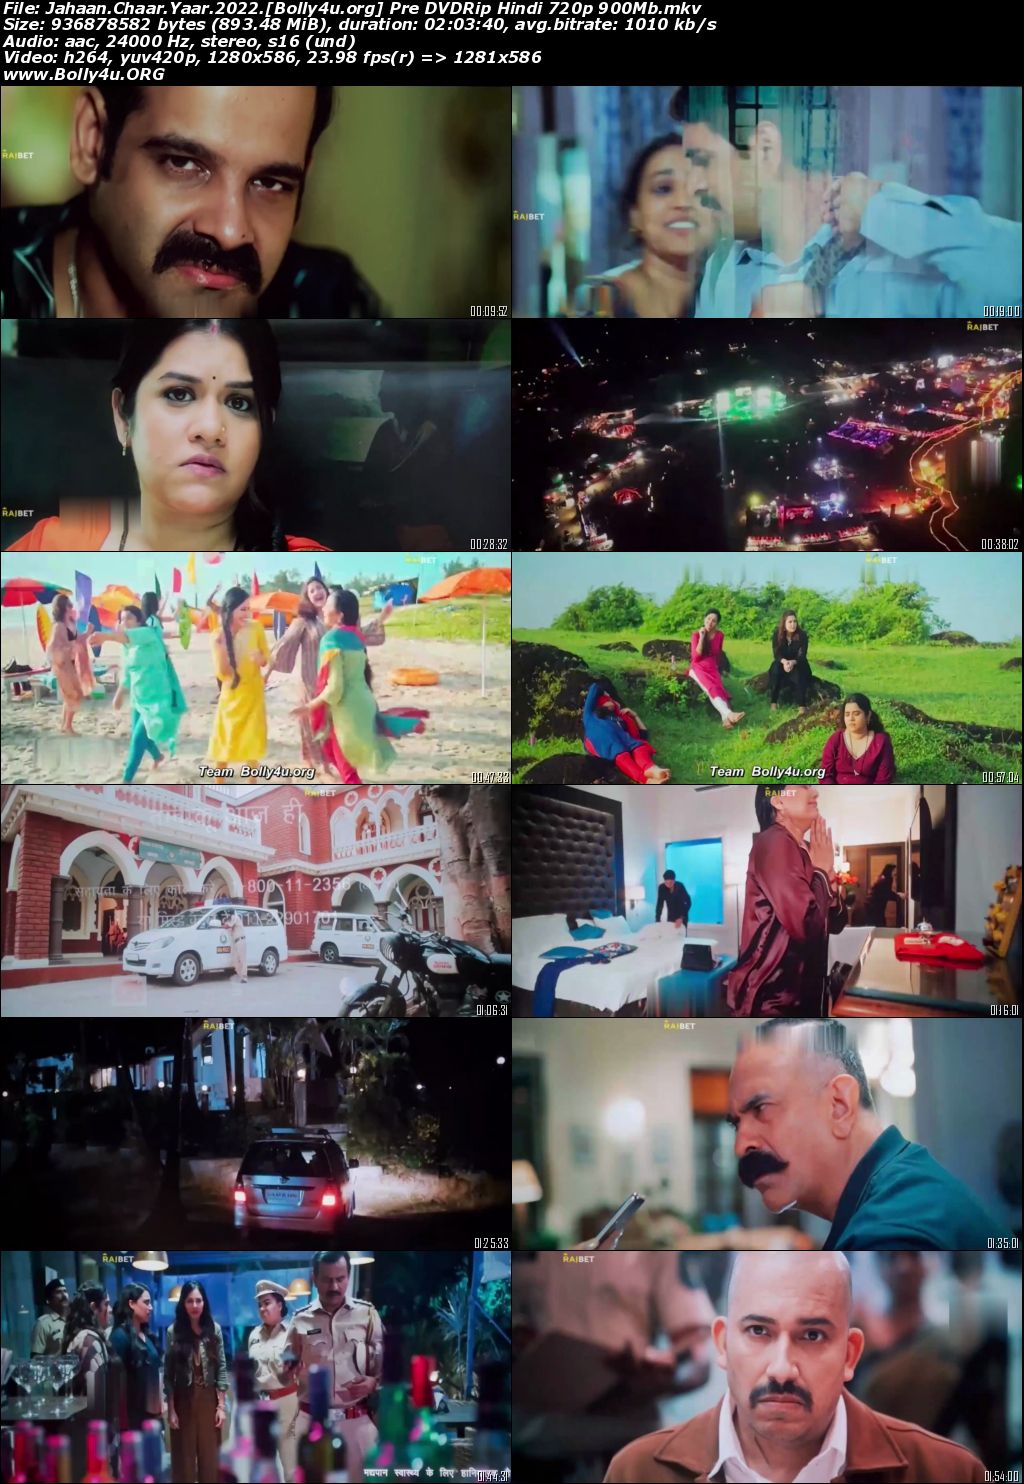 Jahaan Chaar Yaar 2022 Pre DVDRip Hindi Full Movie Download 720p 480p